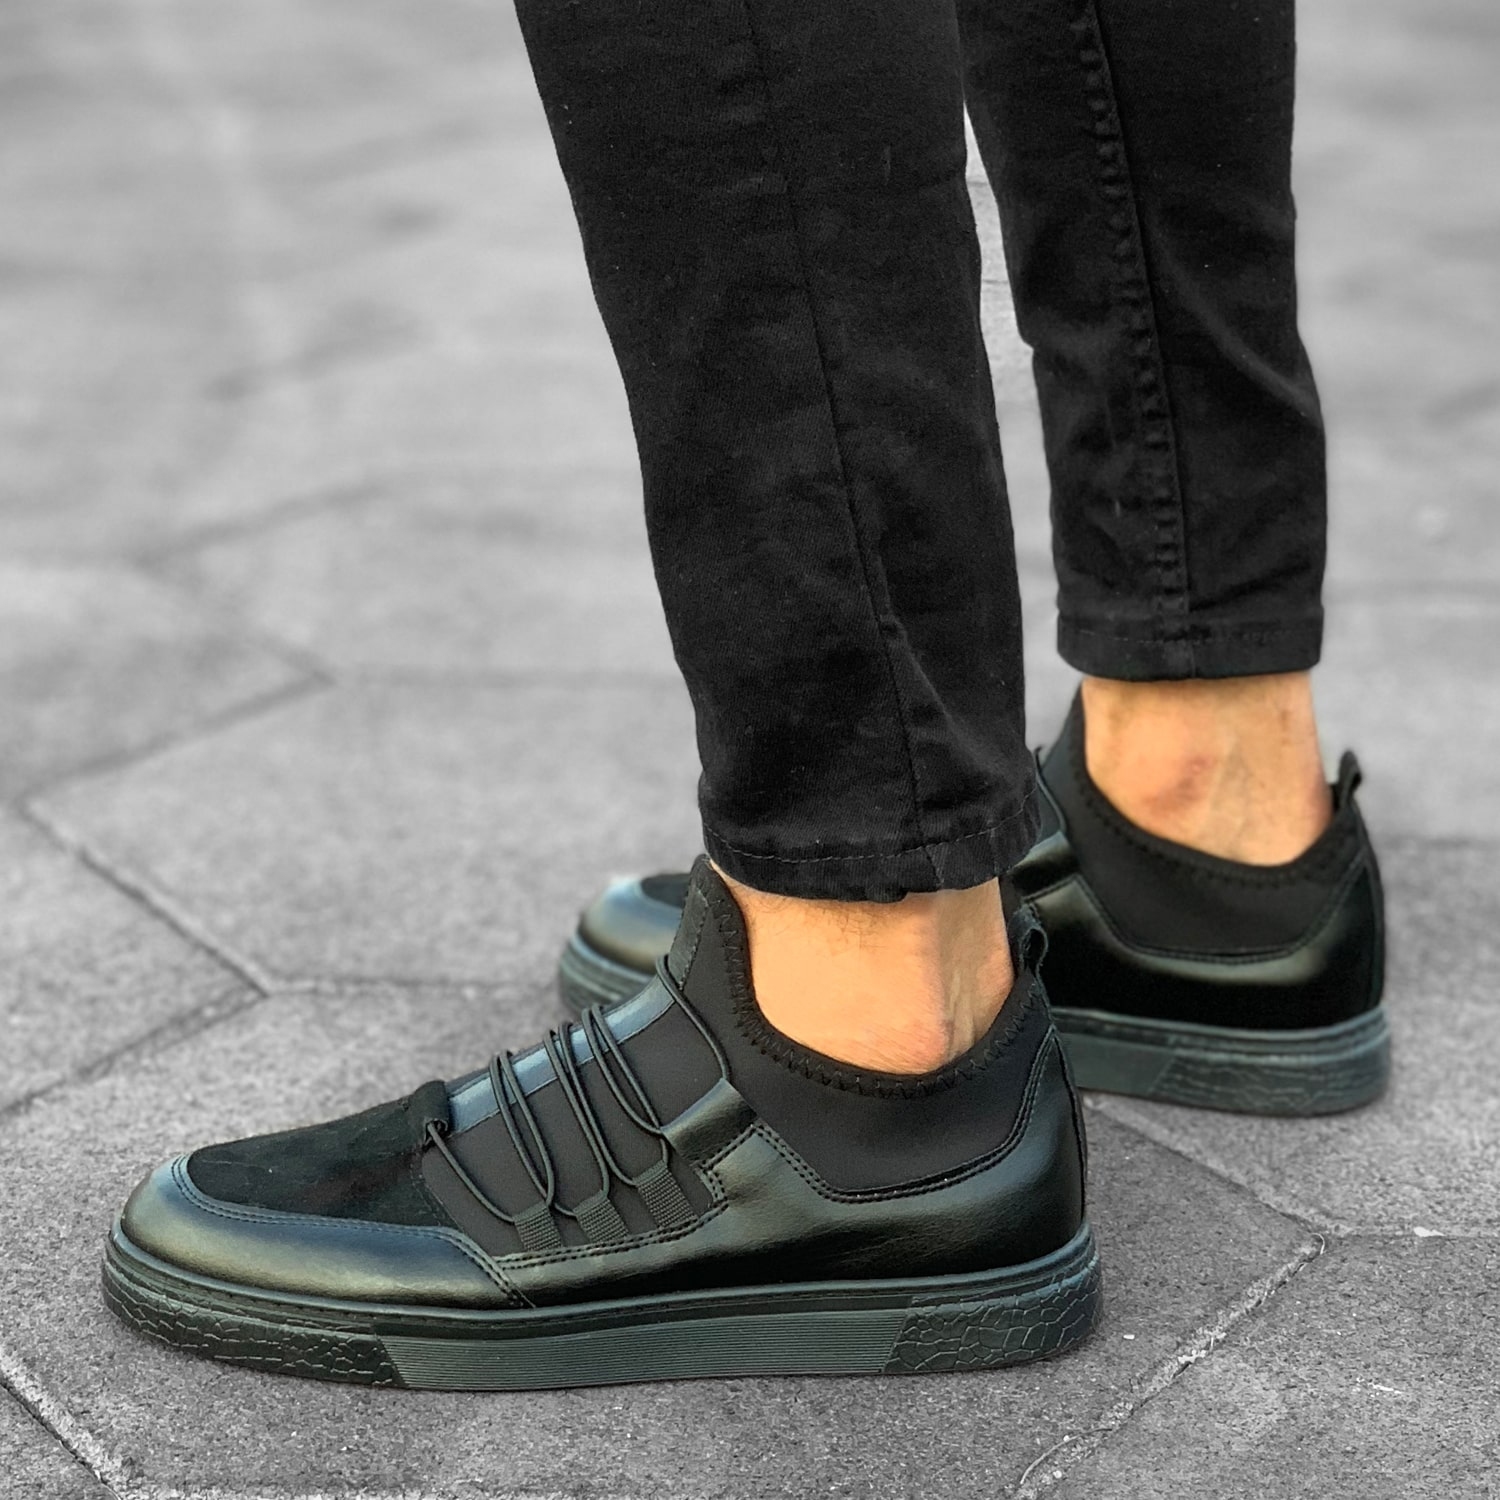 Martin Valen Men's New Design Sneakers Full Black